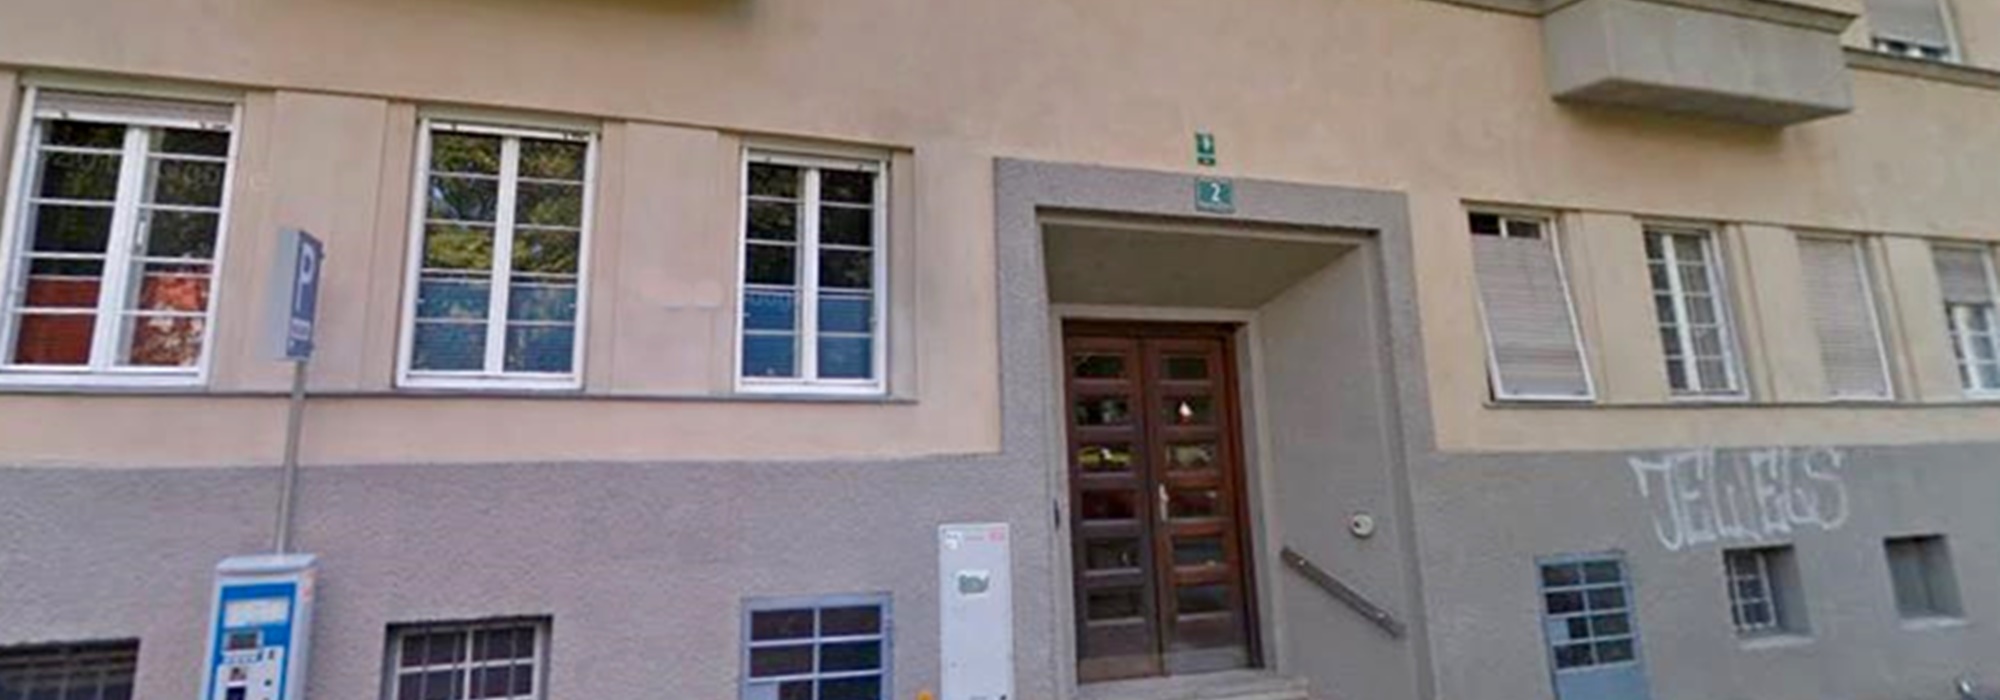 Schöne 3 Zimmer Altbauwohnung am Mezzanin mit Innenhofbalkon in LKH-Nähe zu vermieten